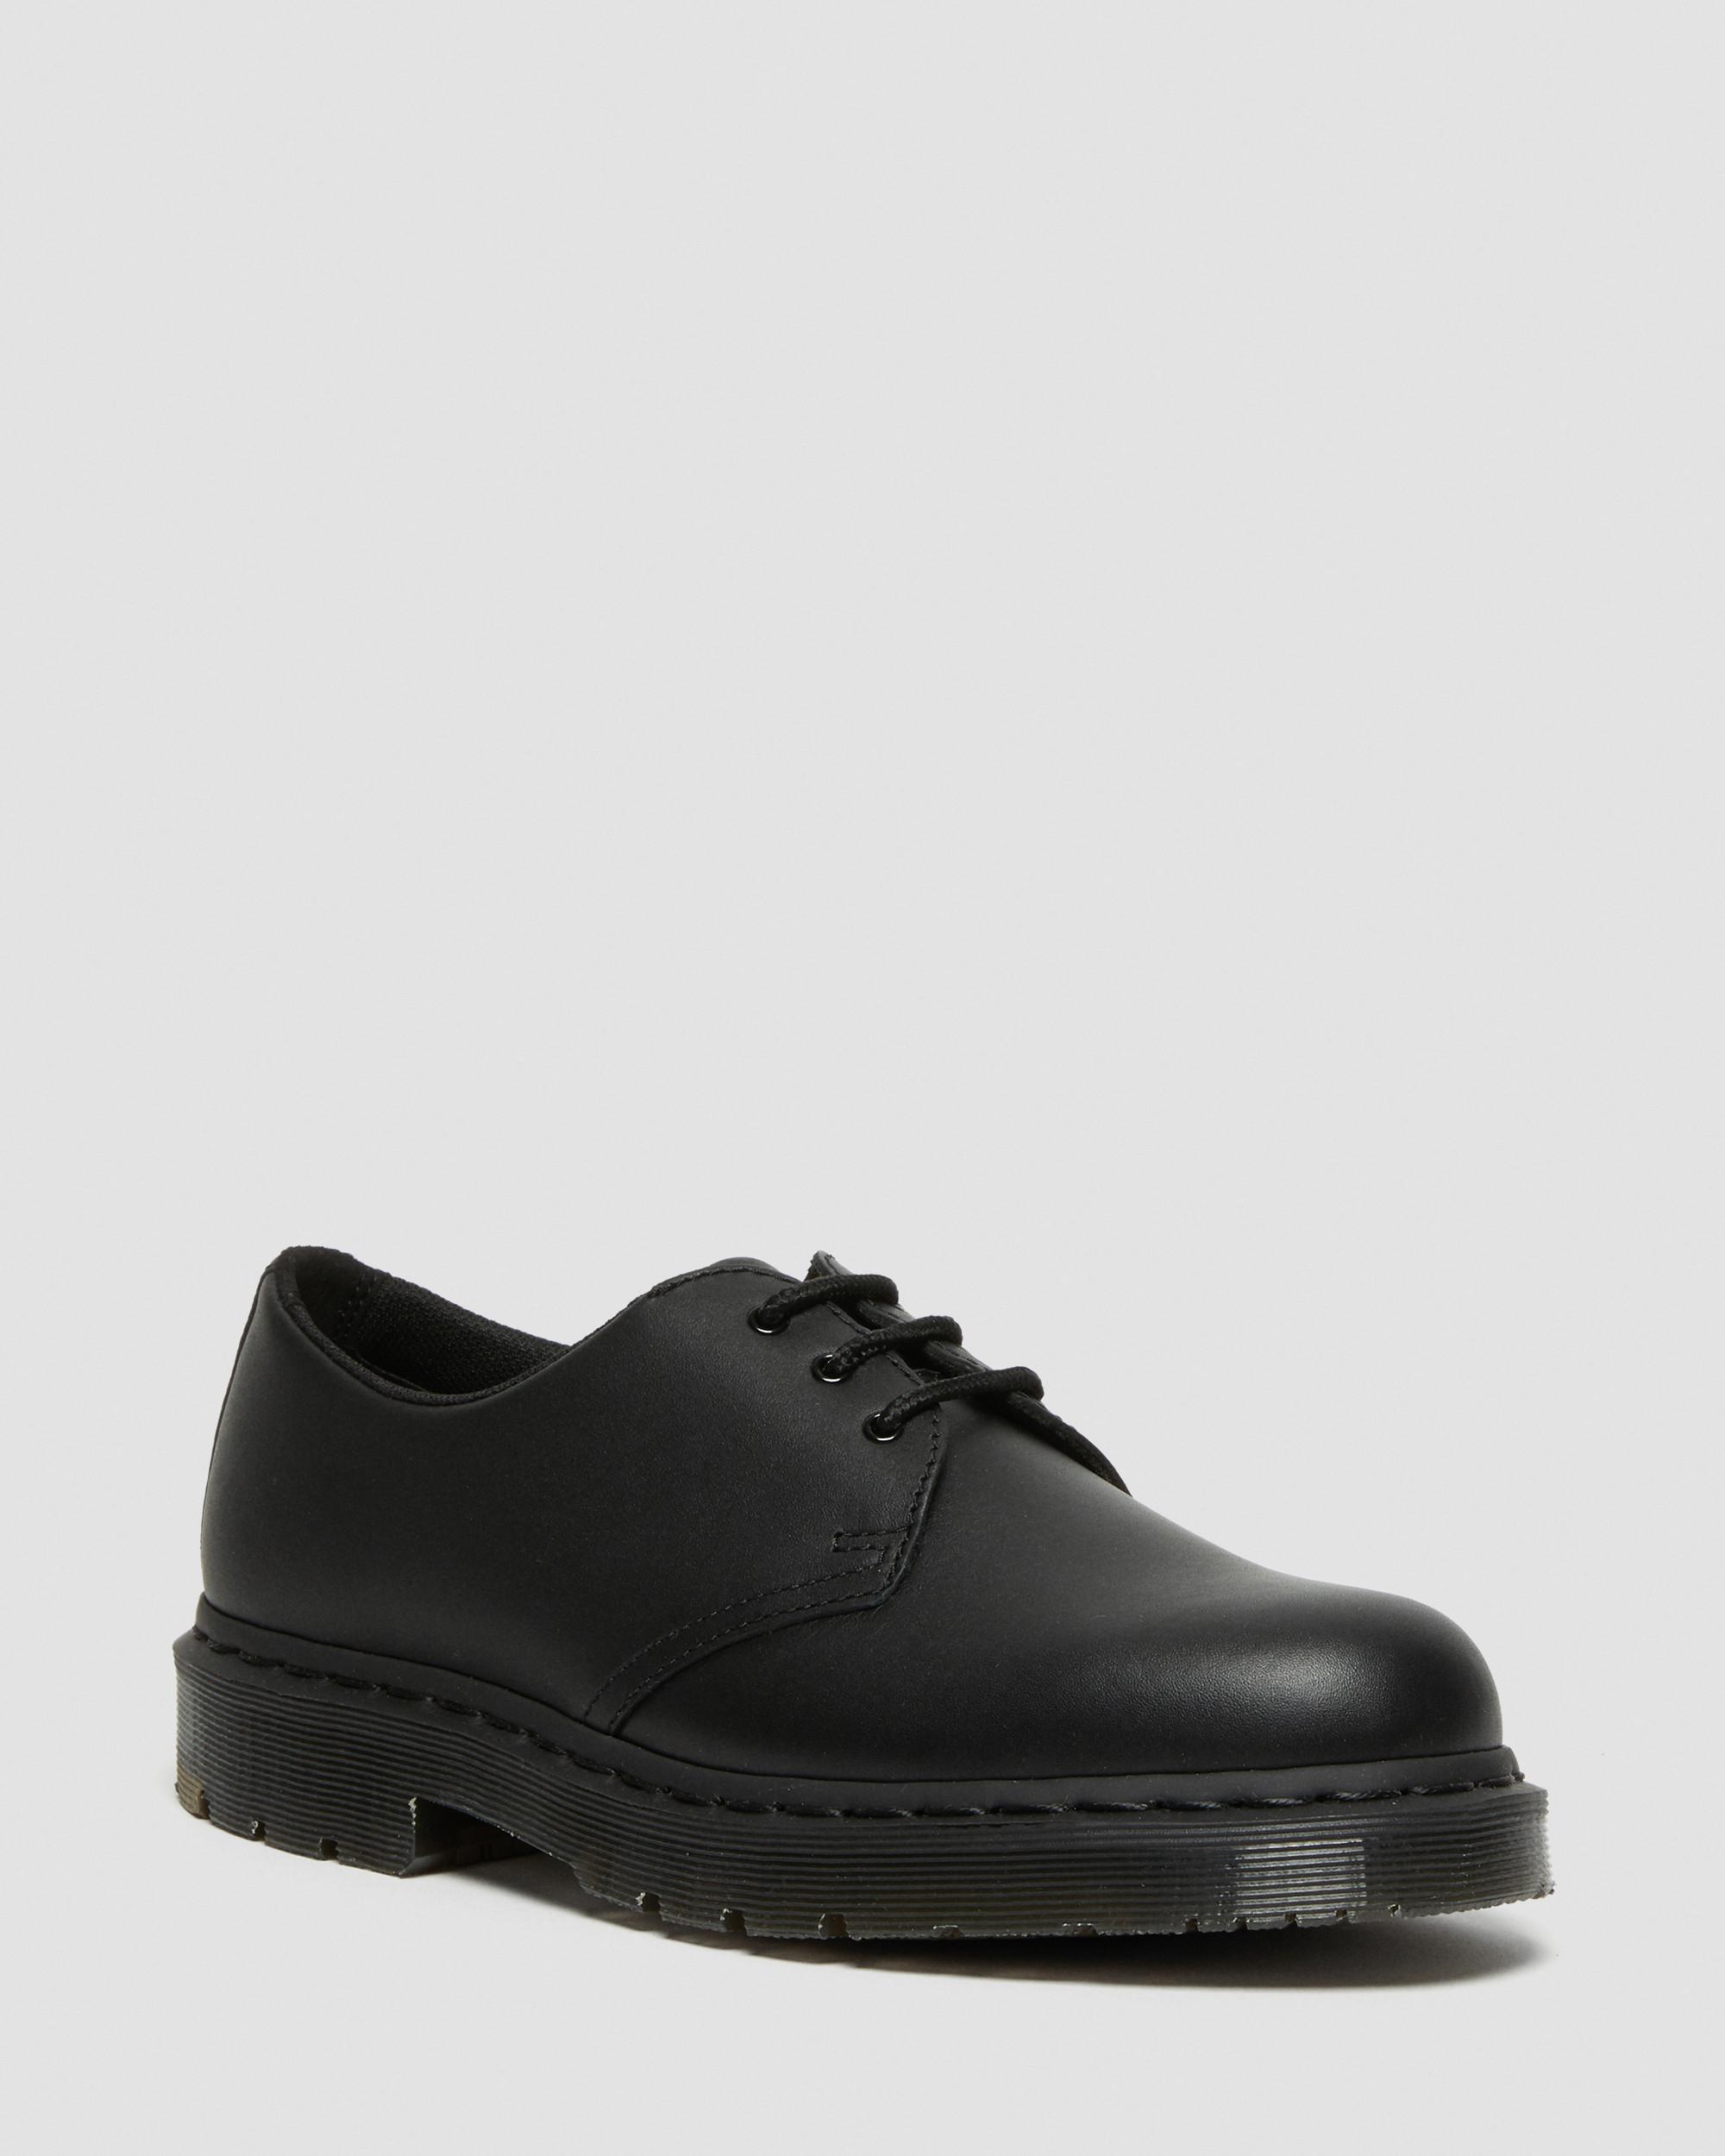 DR MARTENS 1461 Mono Slip Resistant Oxford Shoes